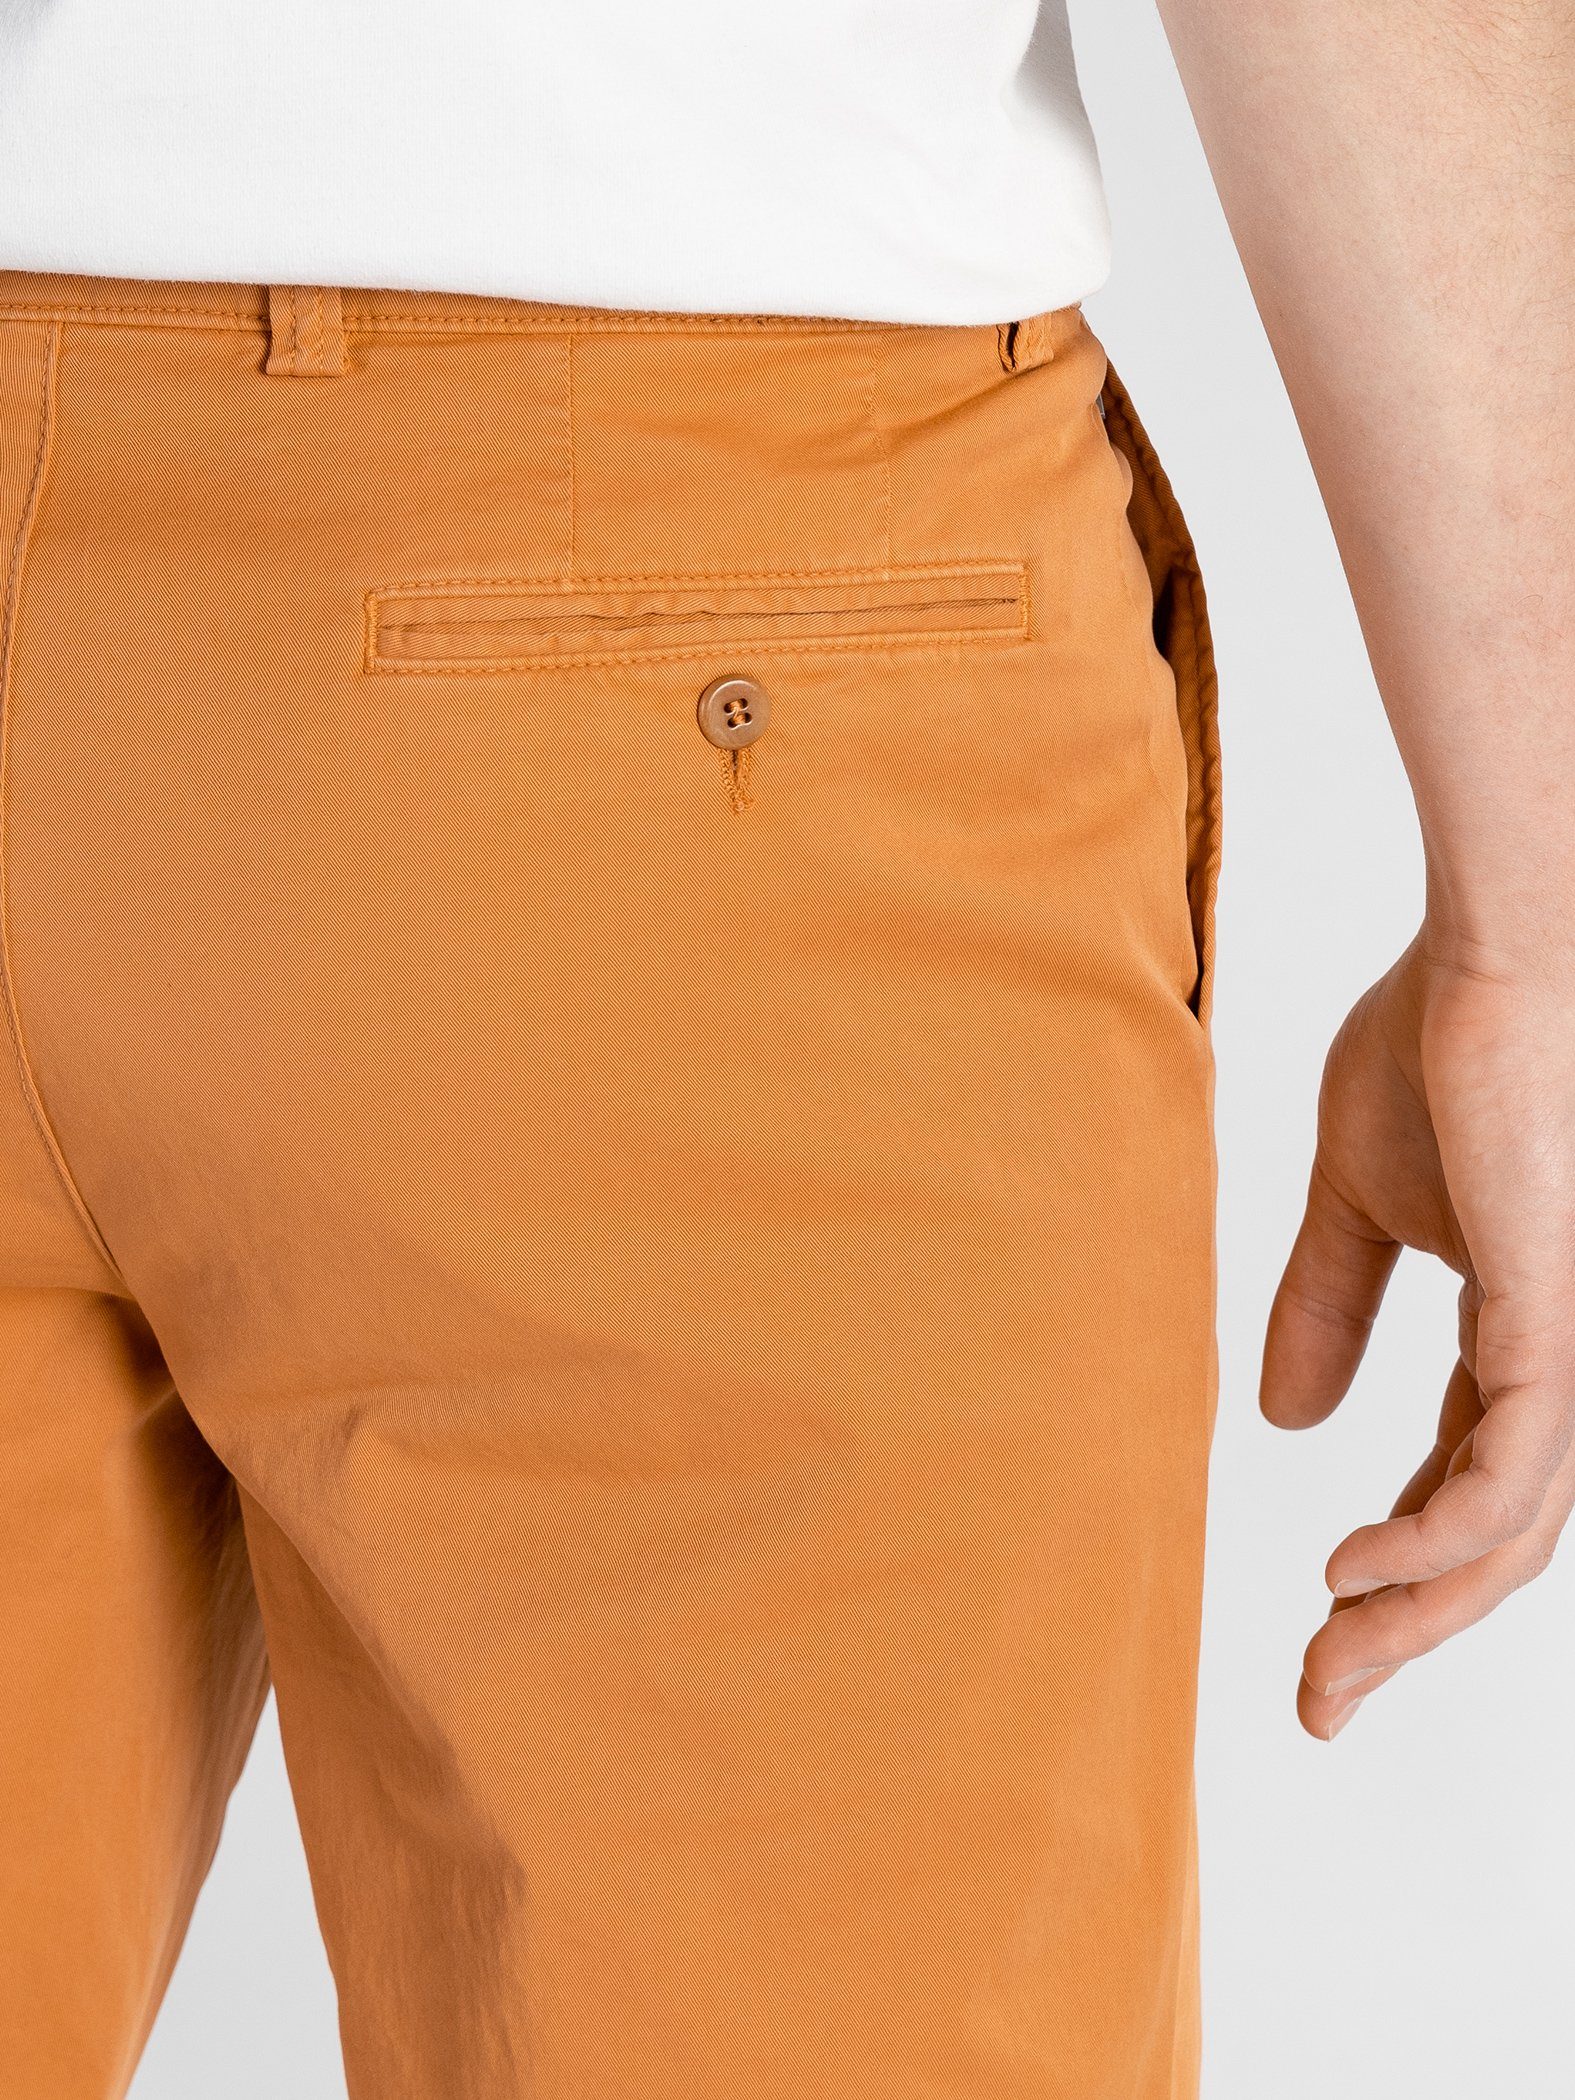 TwoMates Shorts Shorts mit GOTS-zertifiziert Bund, Orange Farbauswahl, elastischem